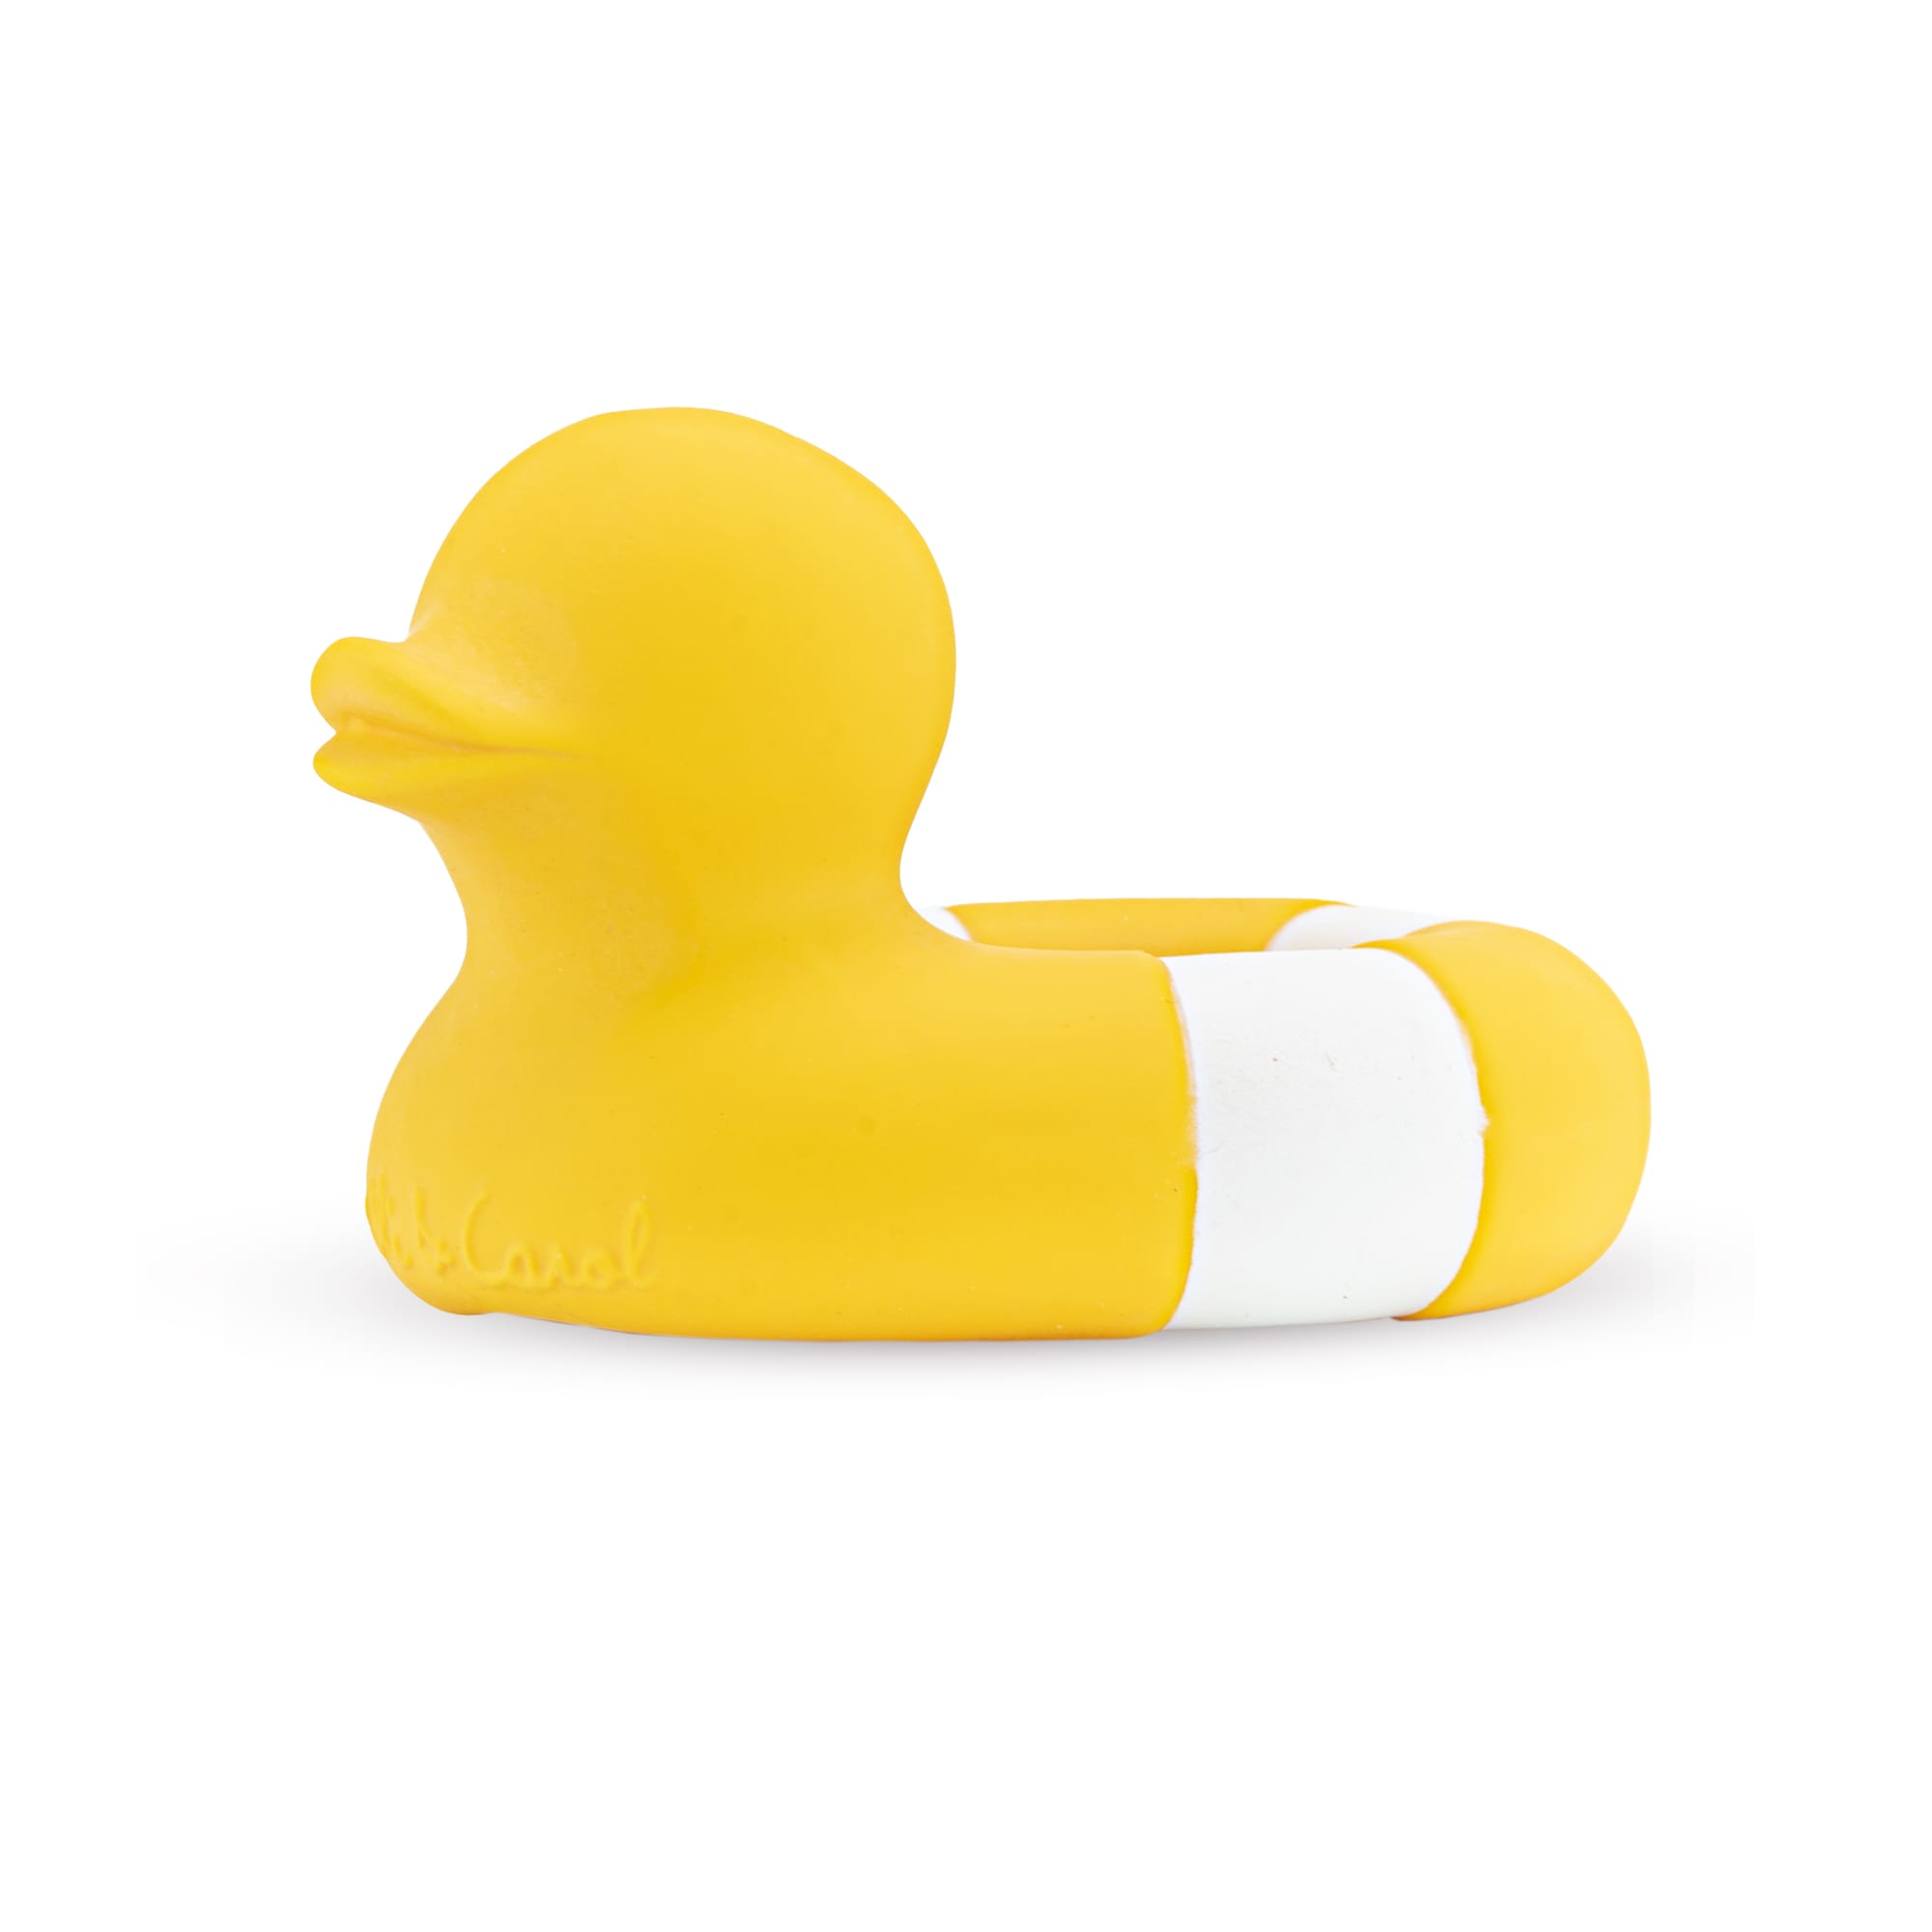 TD® canard de bain flottant bebe jaune enfant en silicone jouet